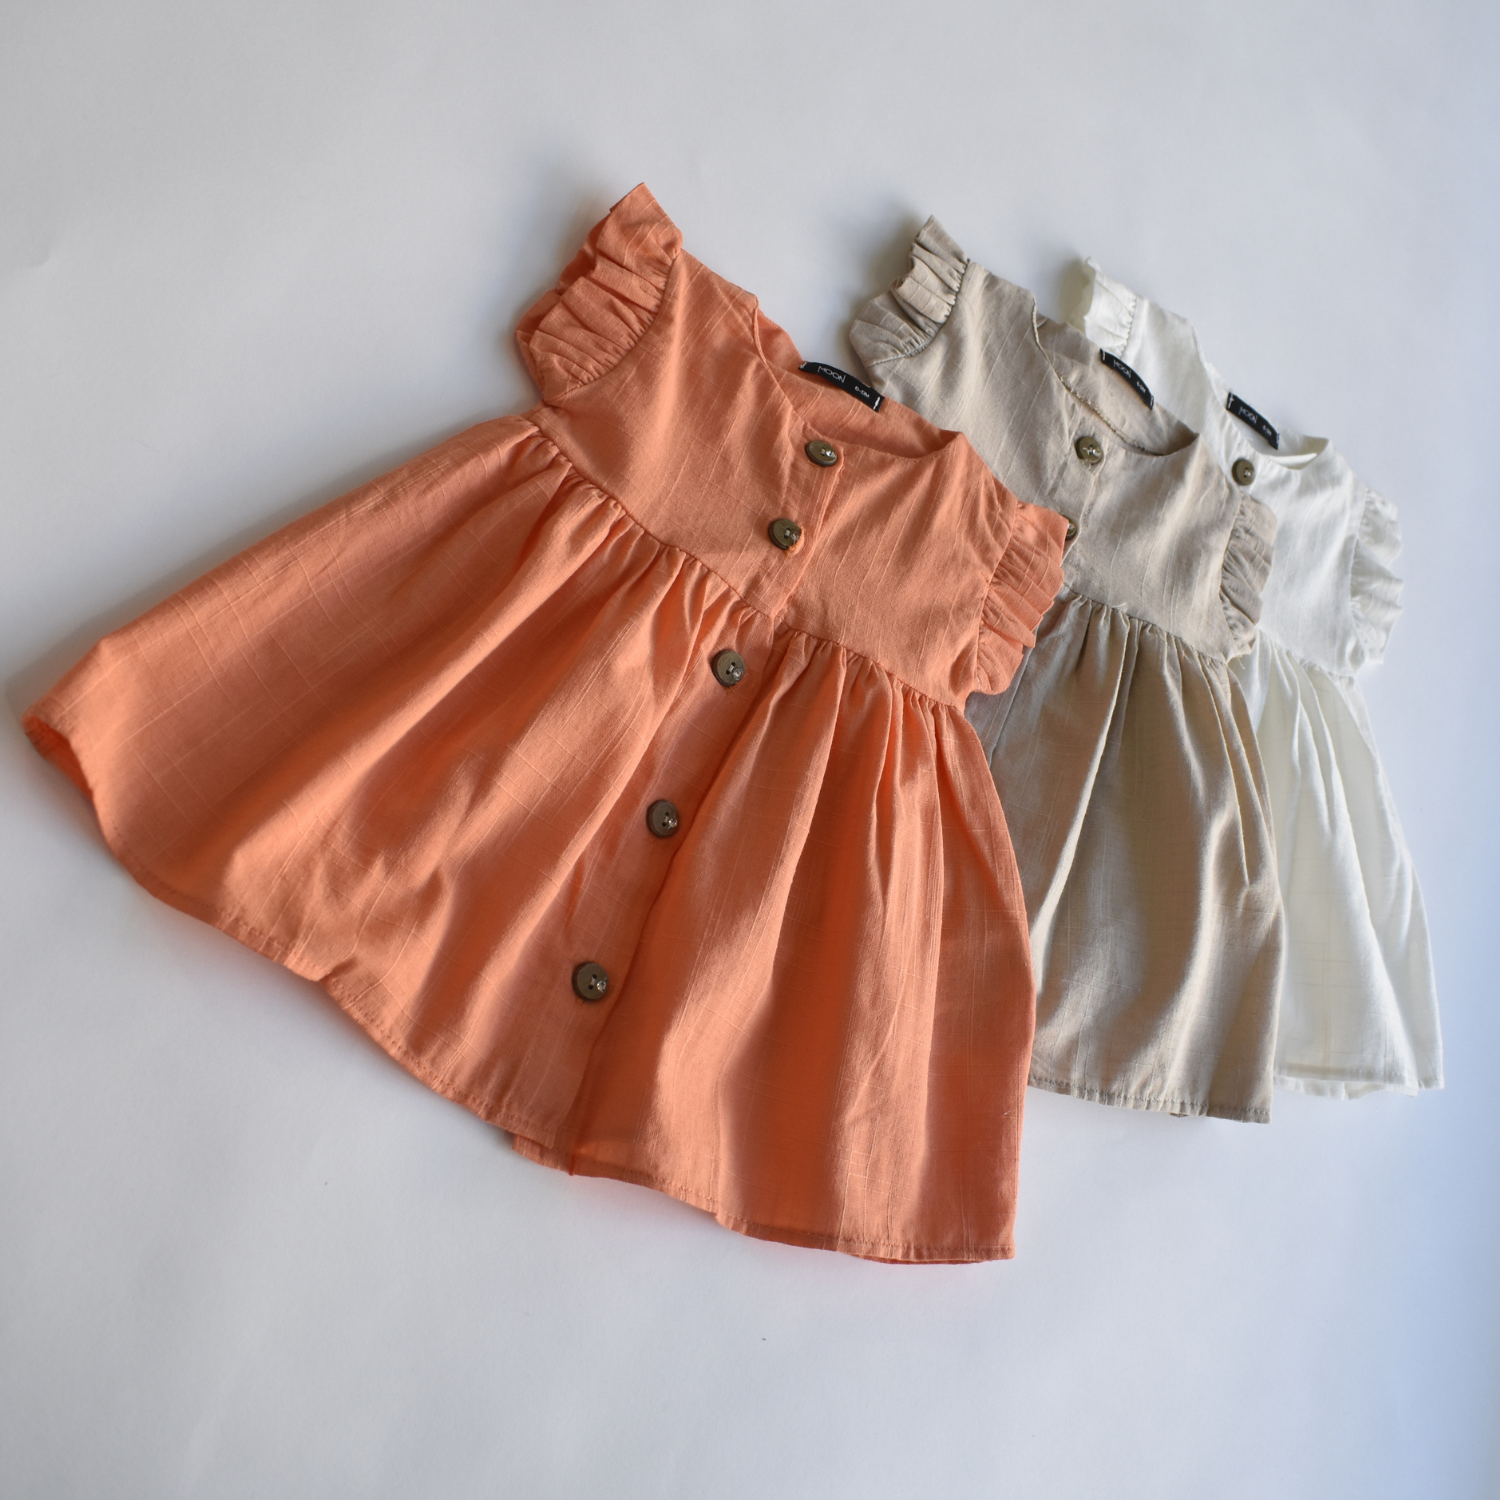 Little Love Girls Cotton Dress